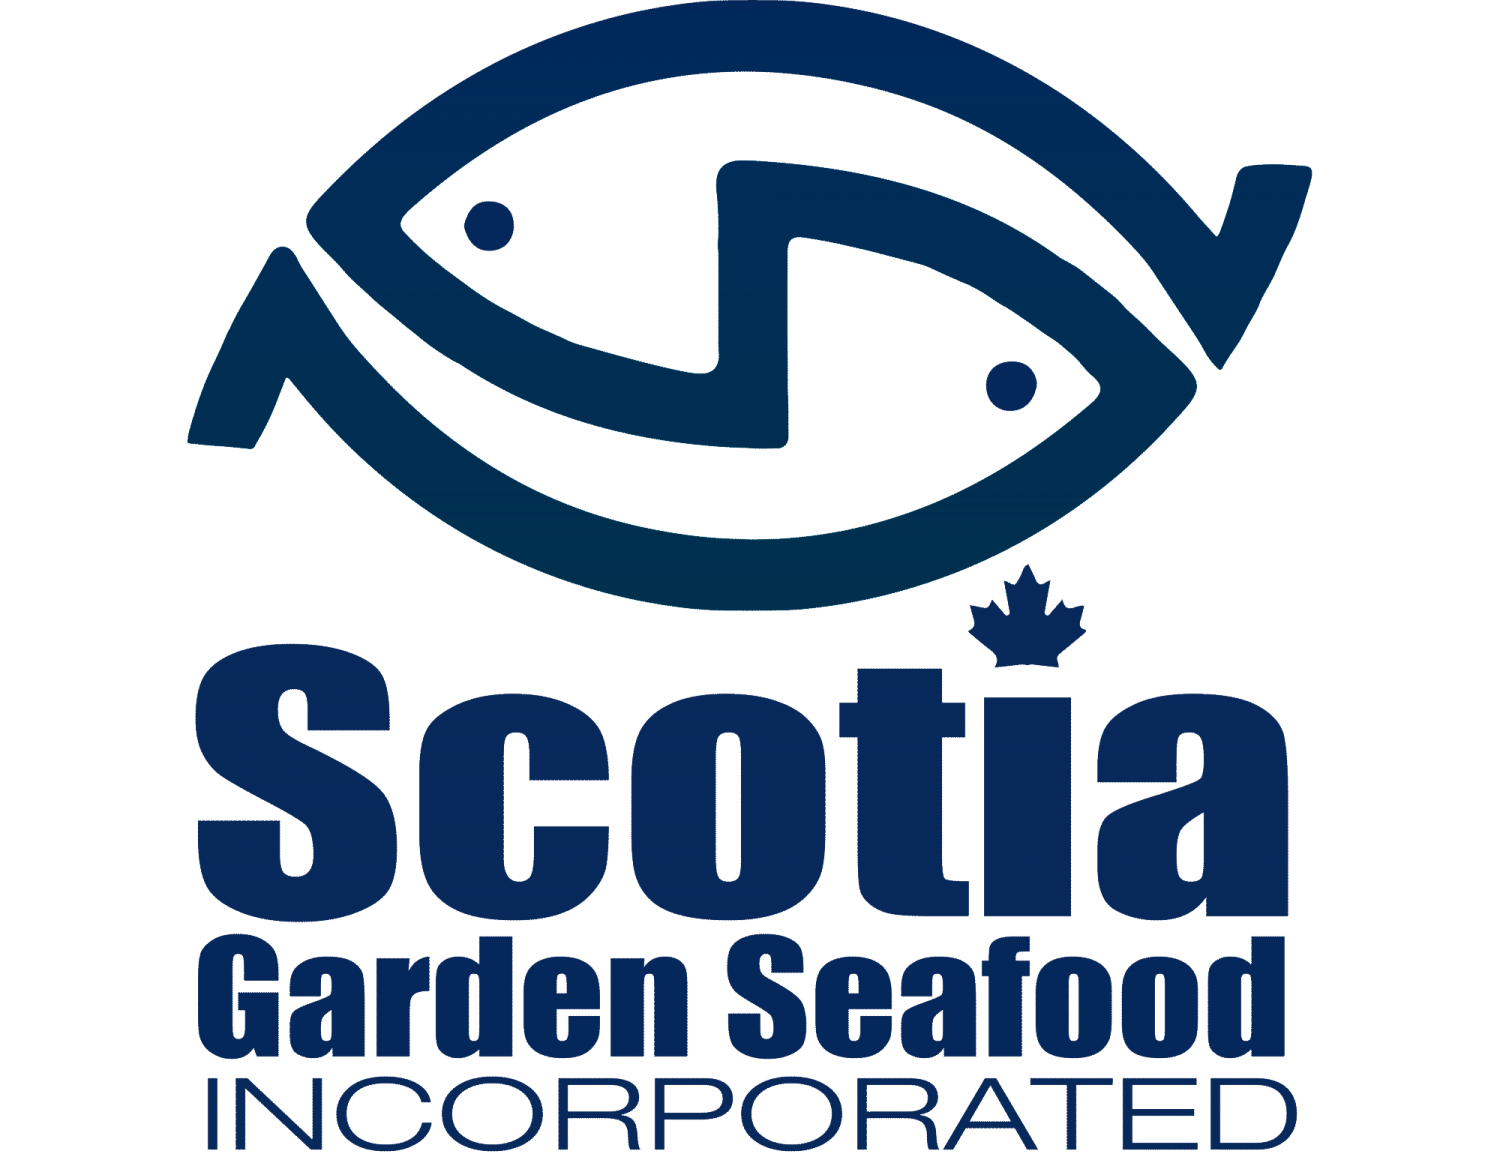 Scotia Garden Seafood Inc